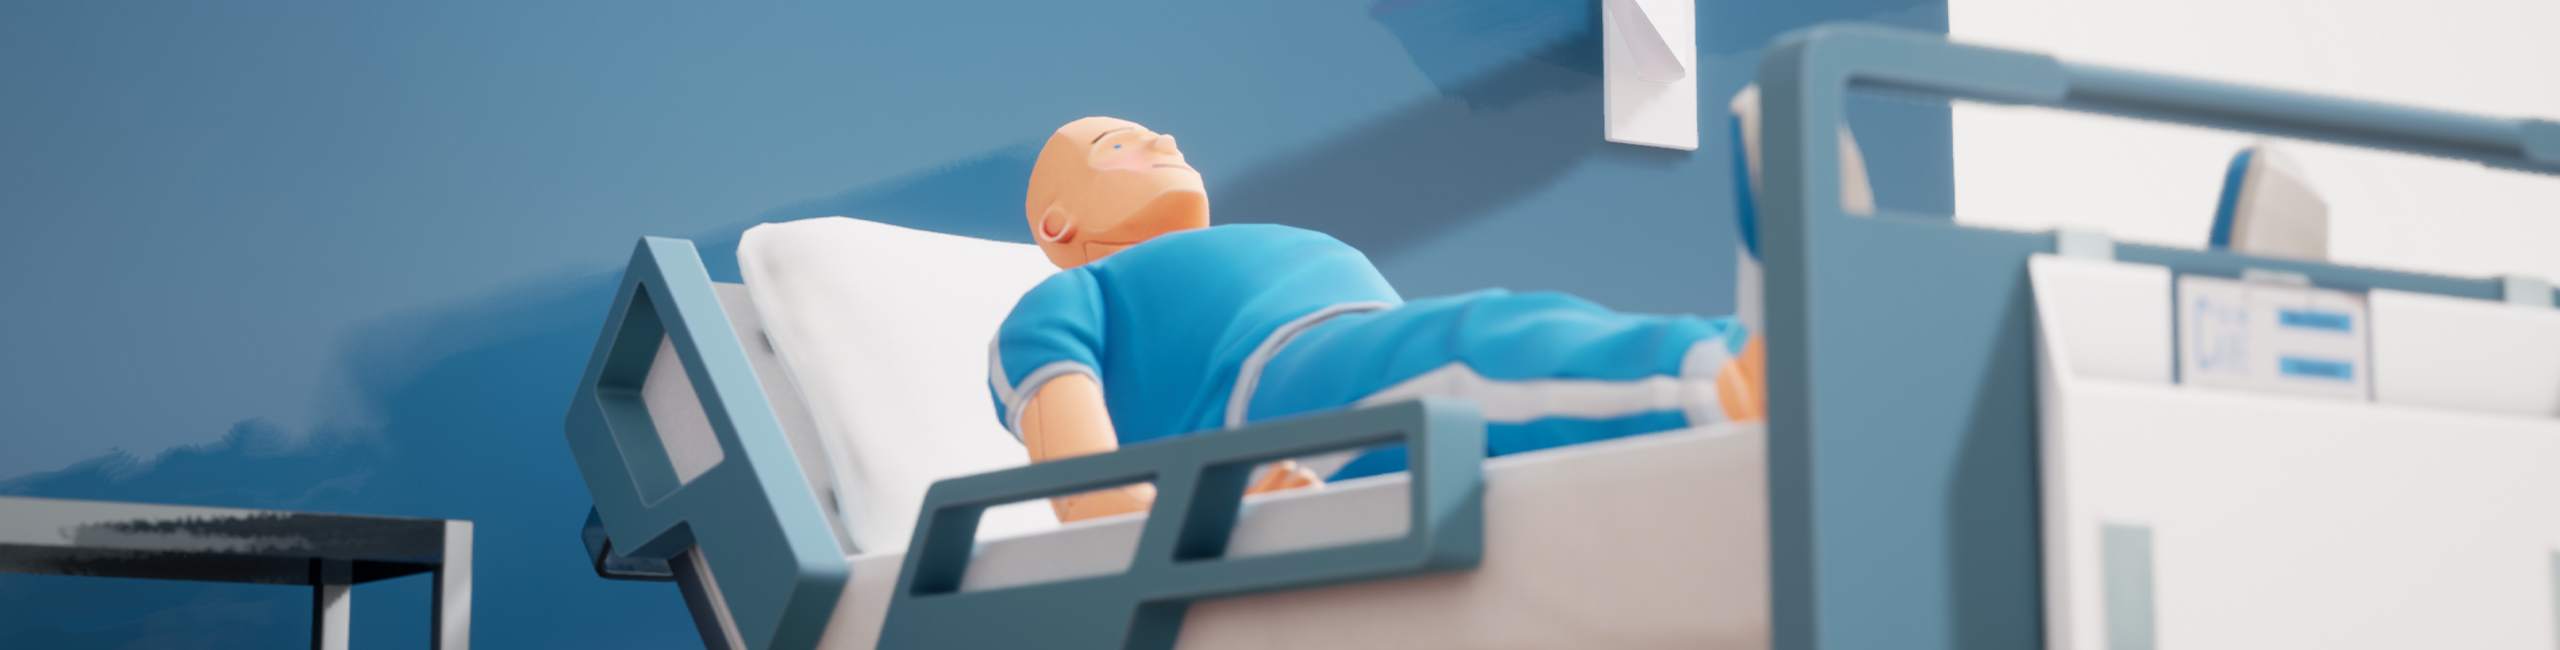 Gameplay VR-Training - Patient liegt in Krankenbett